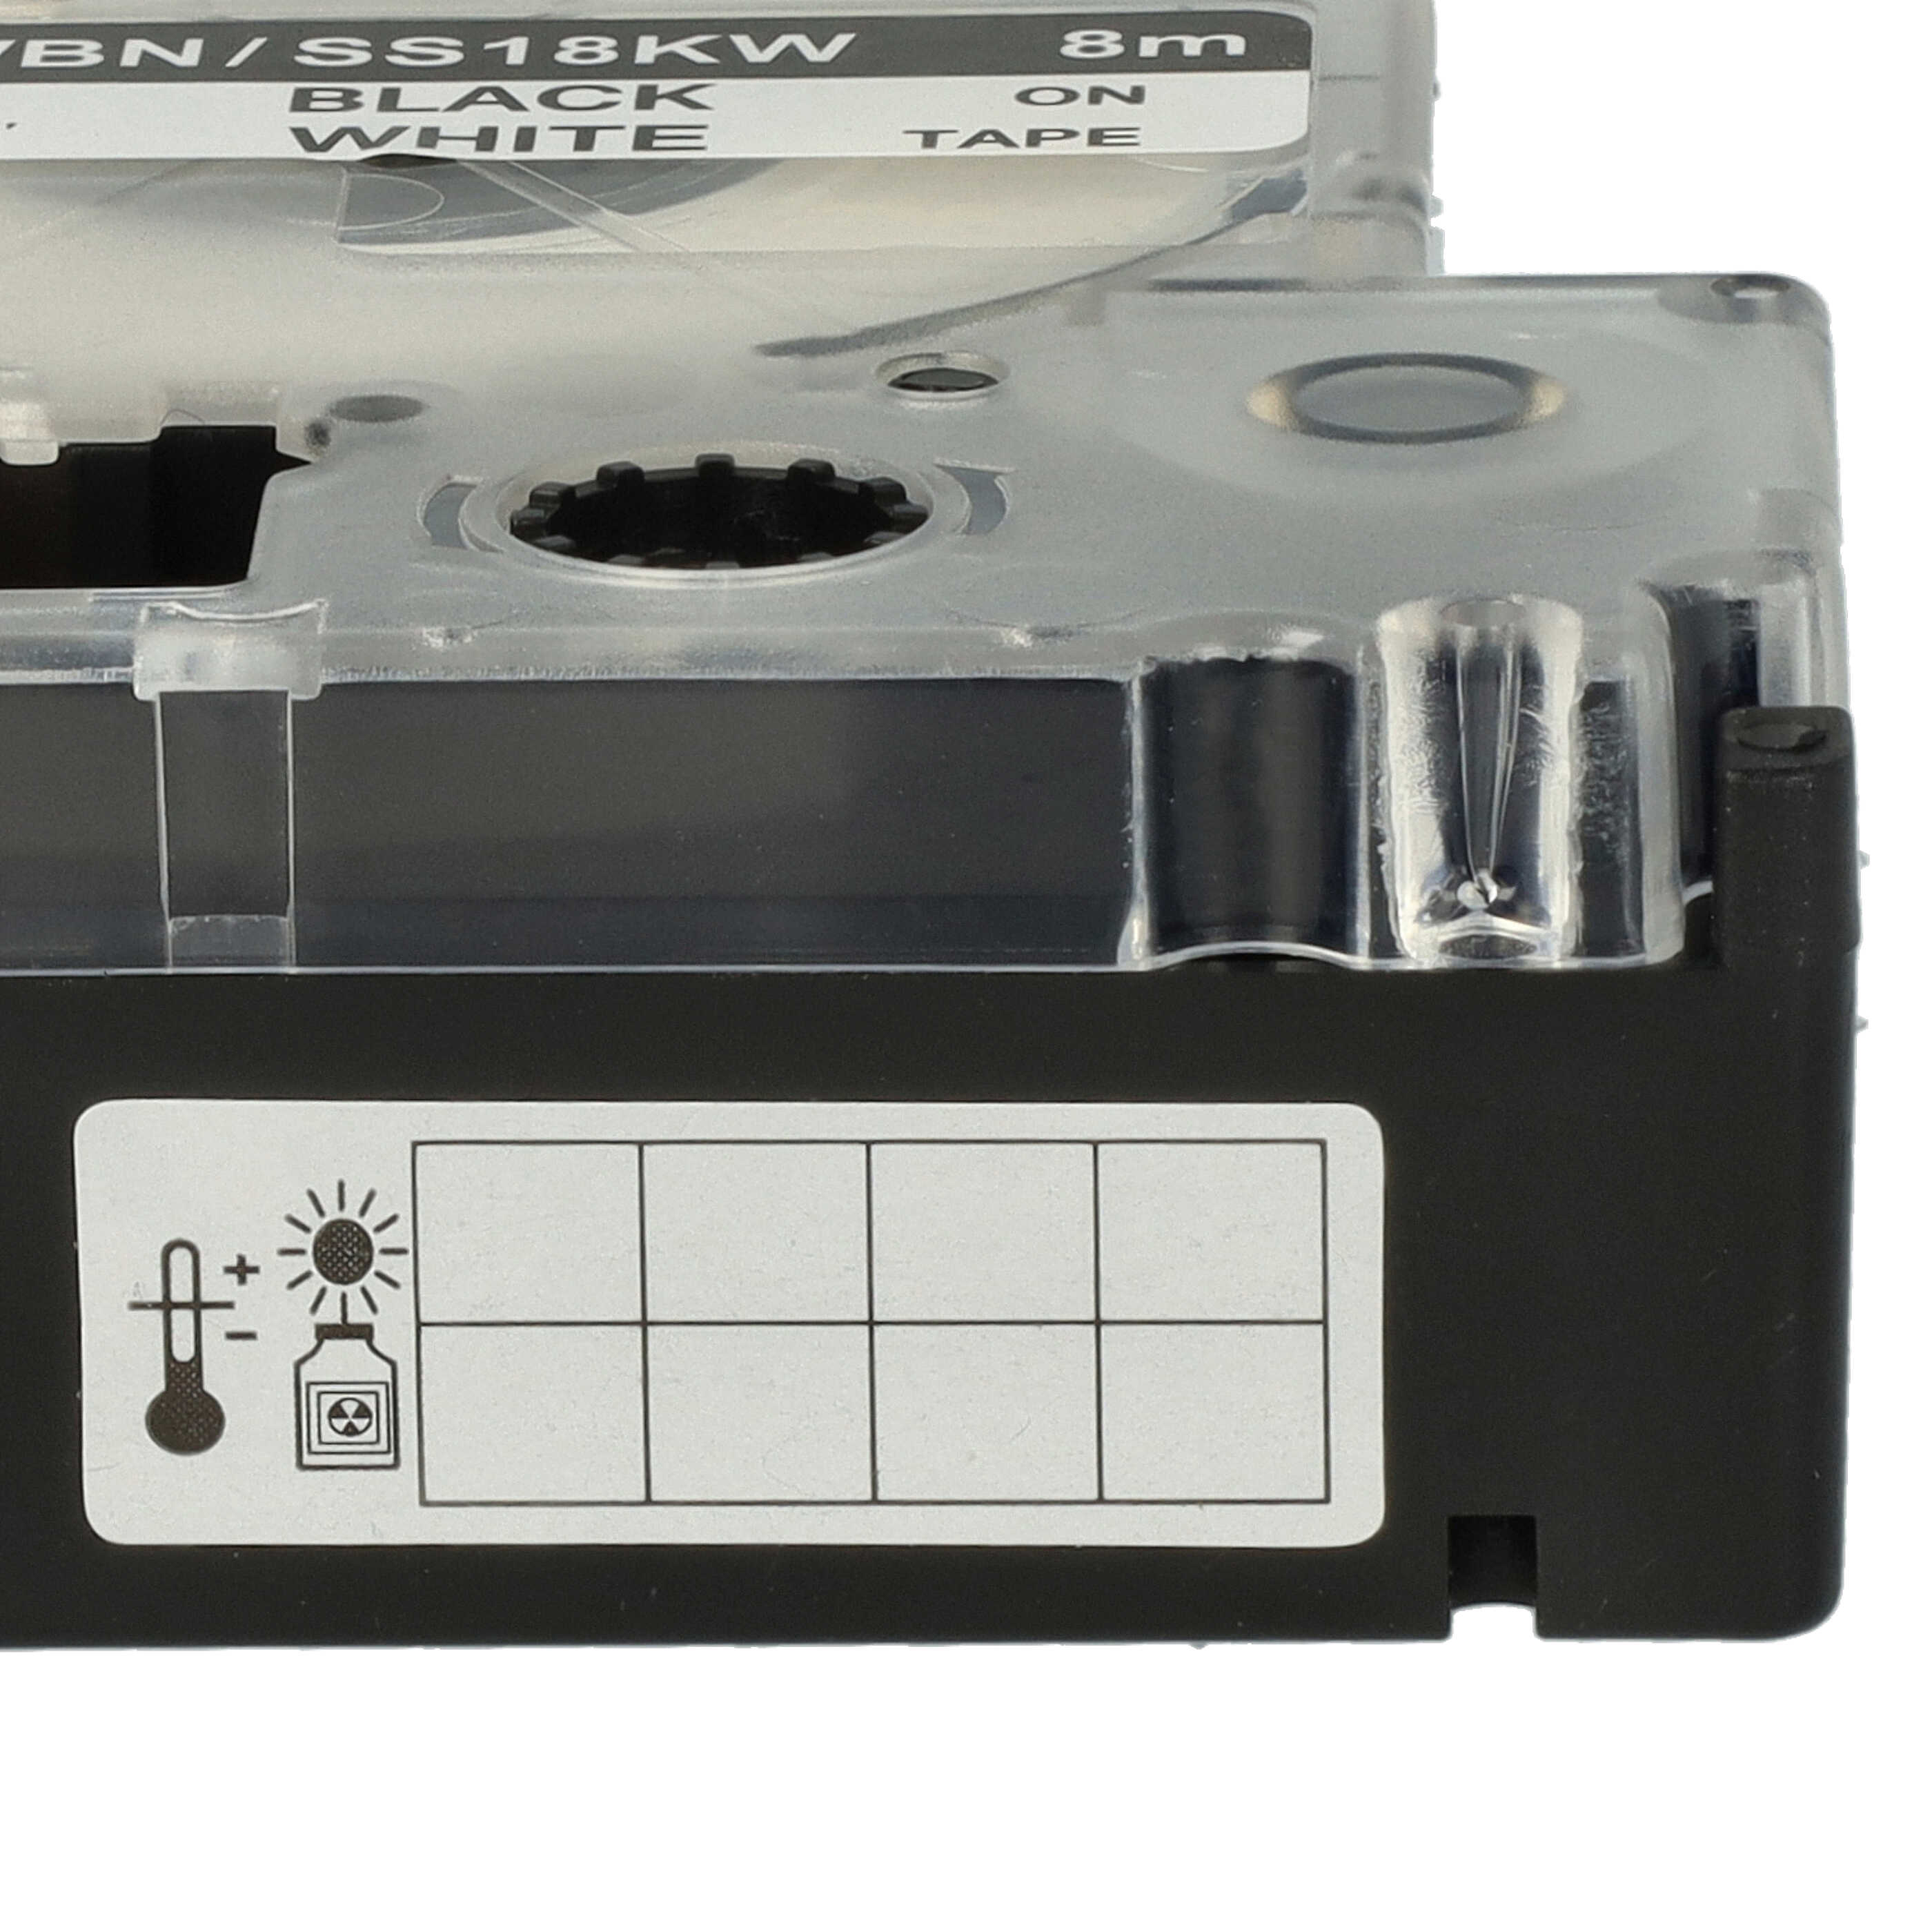 5x Cassettes à ruban remplacent Epson SS18KW, LC-5WBN - 18mm lettrage Noir ruban Blanc